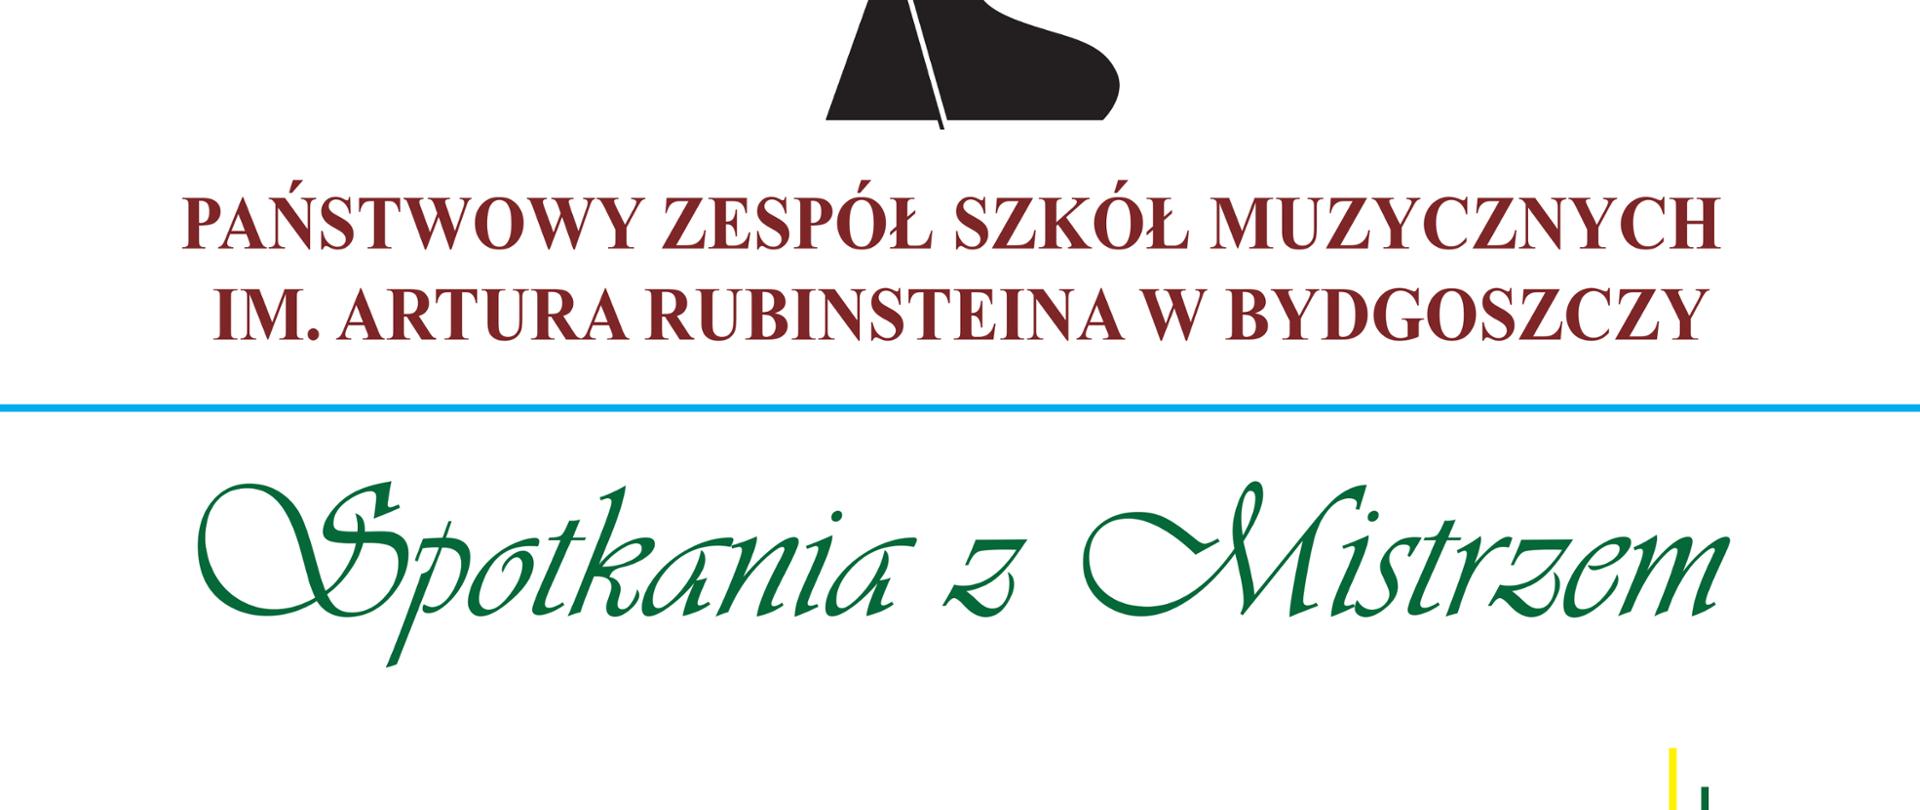 Plakat informujący o warsztatach ze skrzypkiem Mariuszem Patyrą w dniach 16-17 października oraz prof. Joanną Ławrynowicz 19 października 